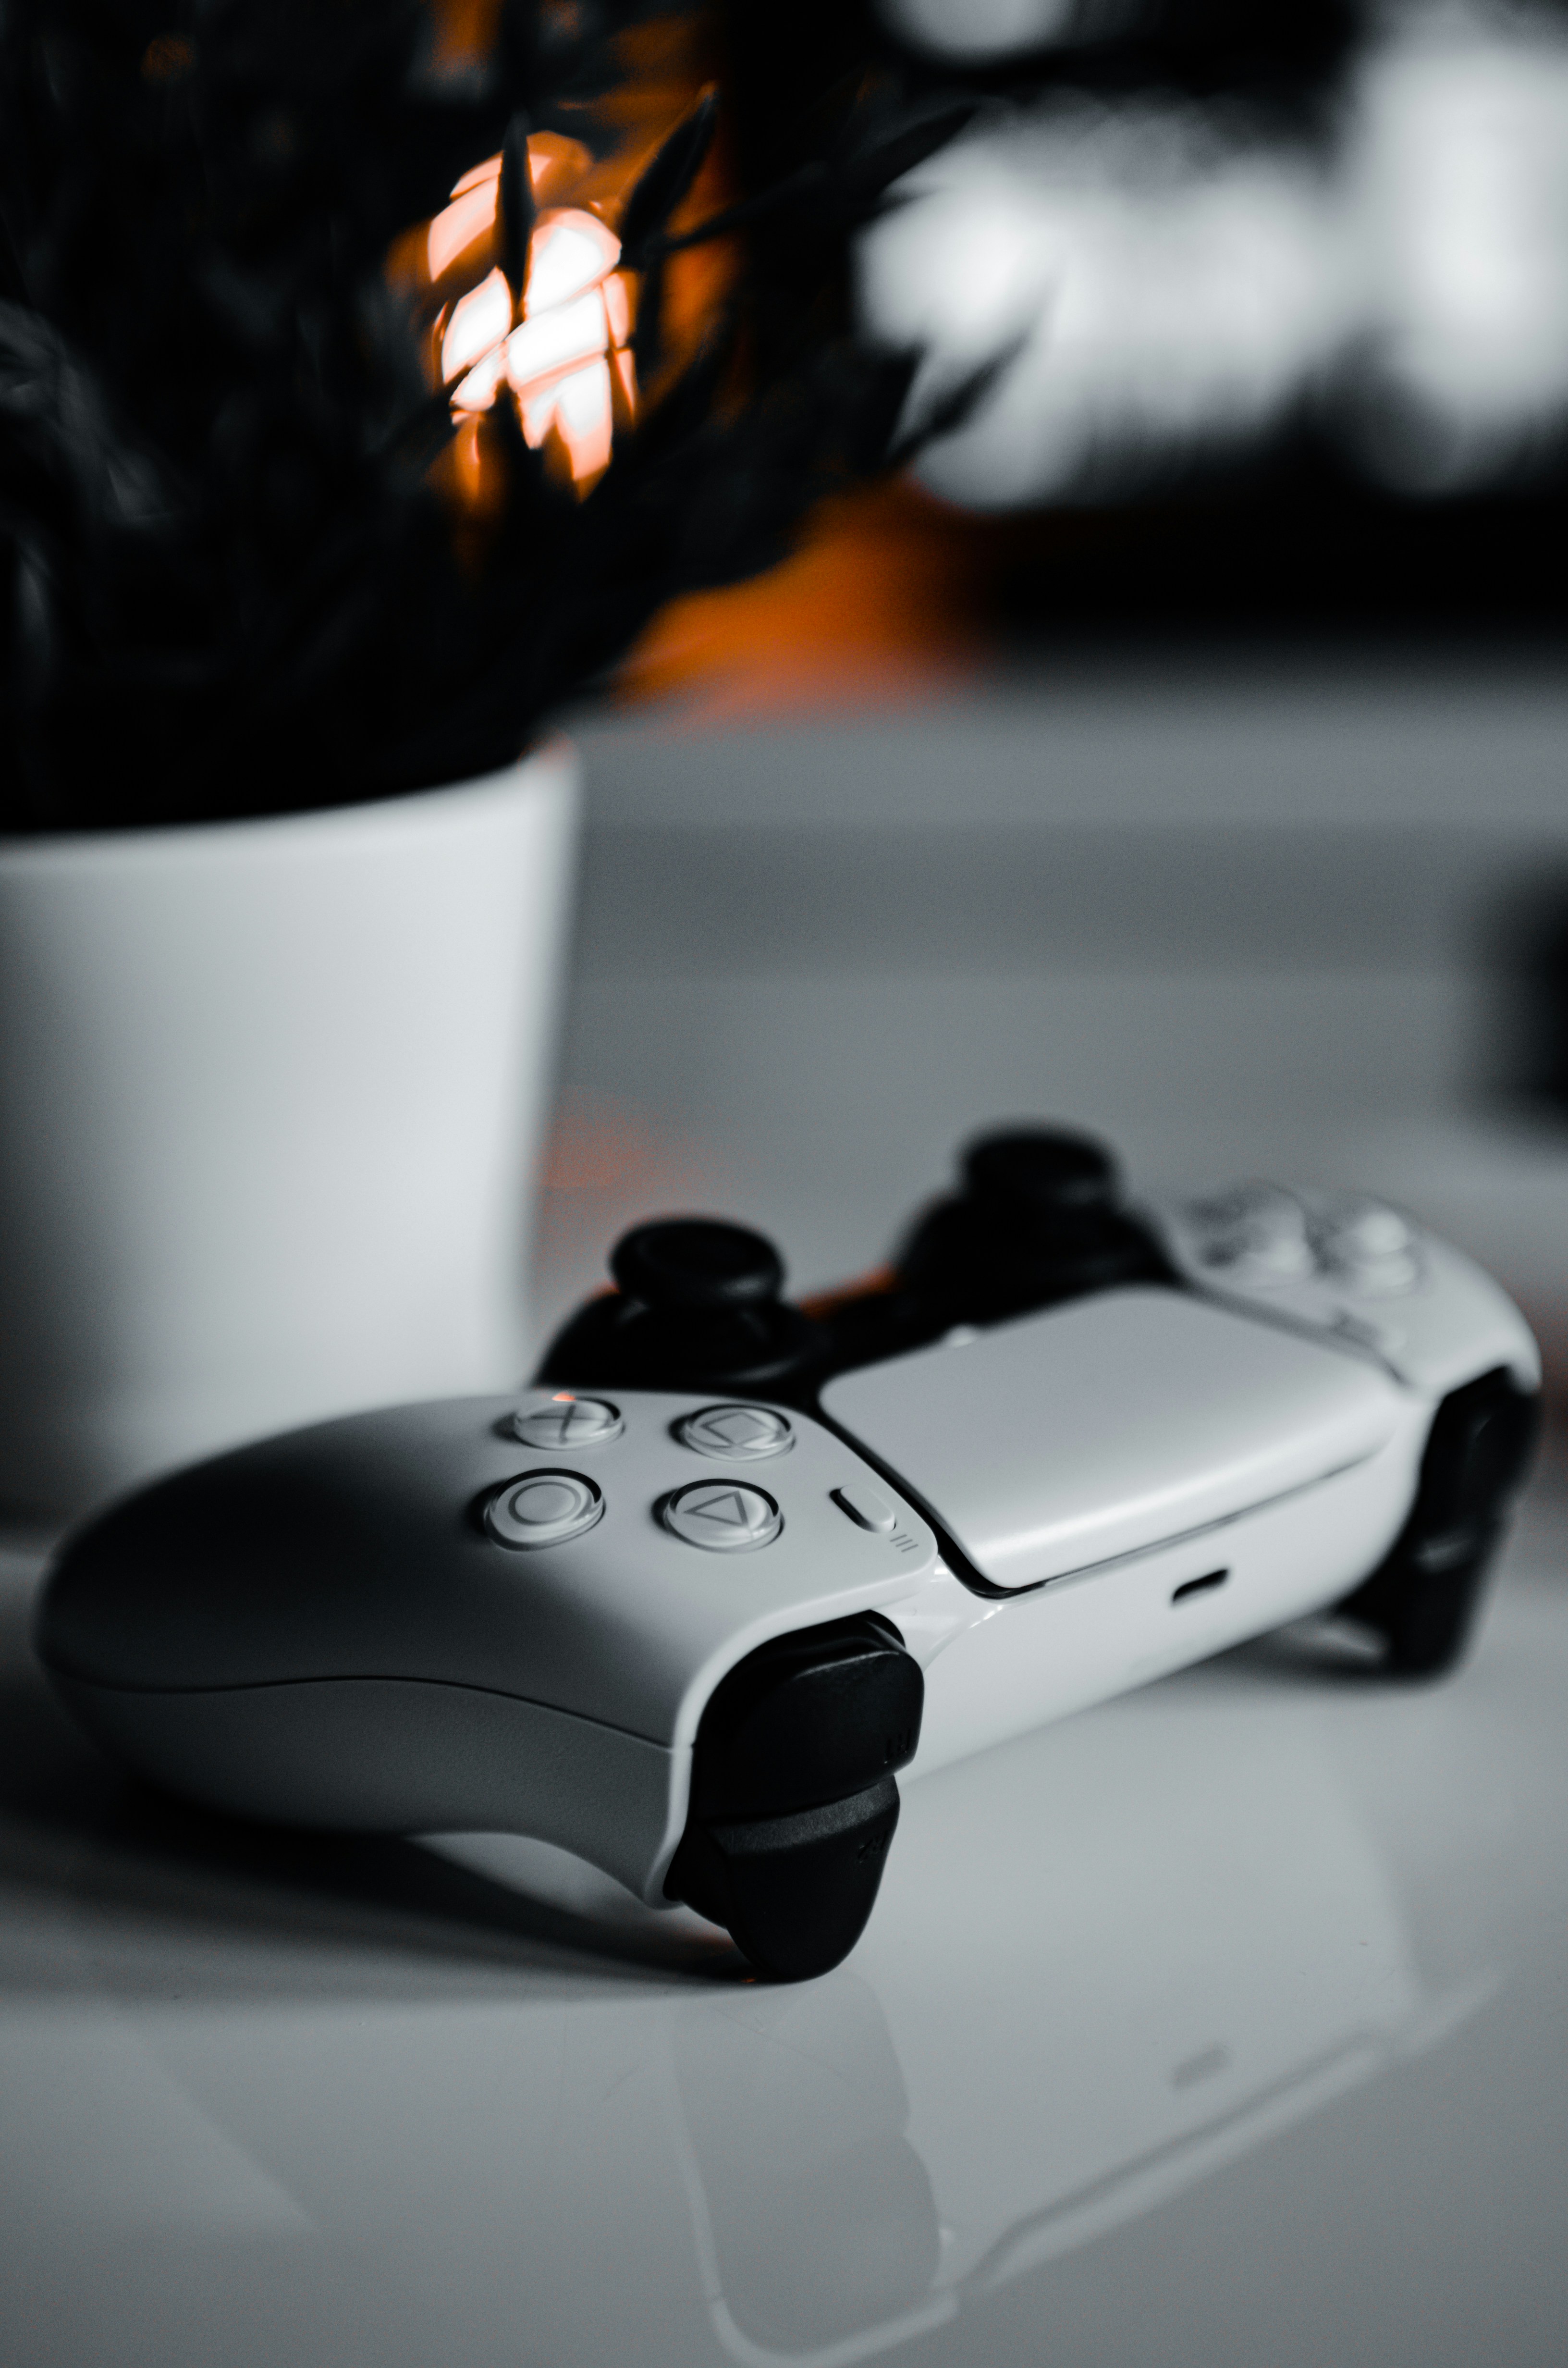 Uncharted 4 para PS5 5 vale a pena? Confira a nossa análise! - Digitalmente  Tech